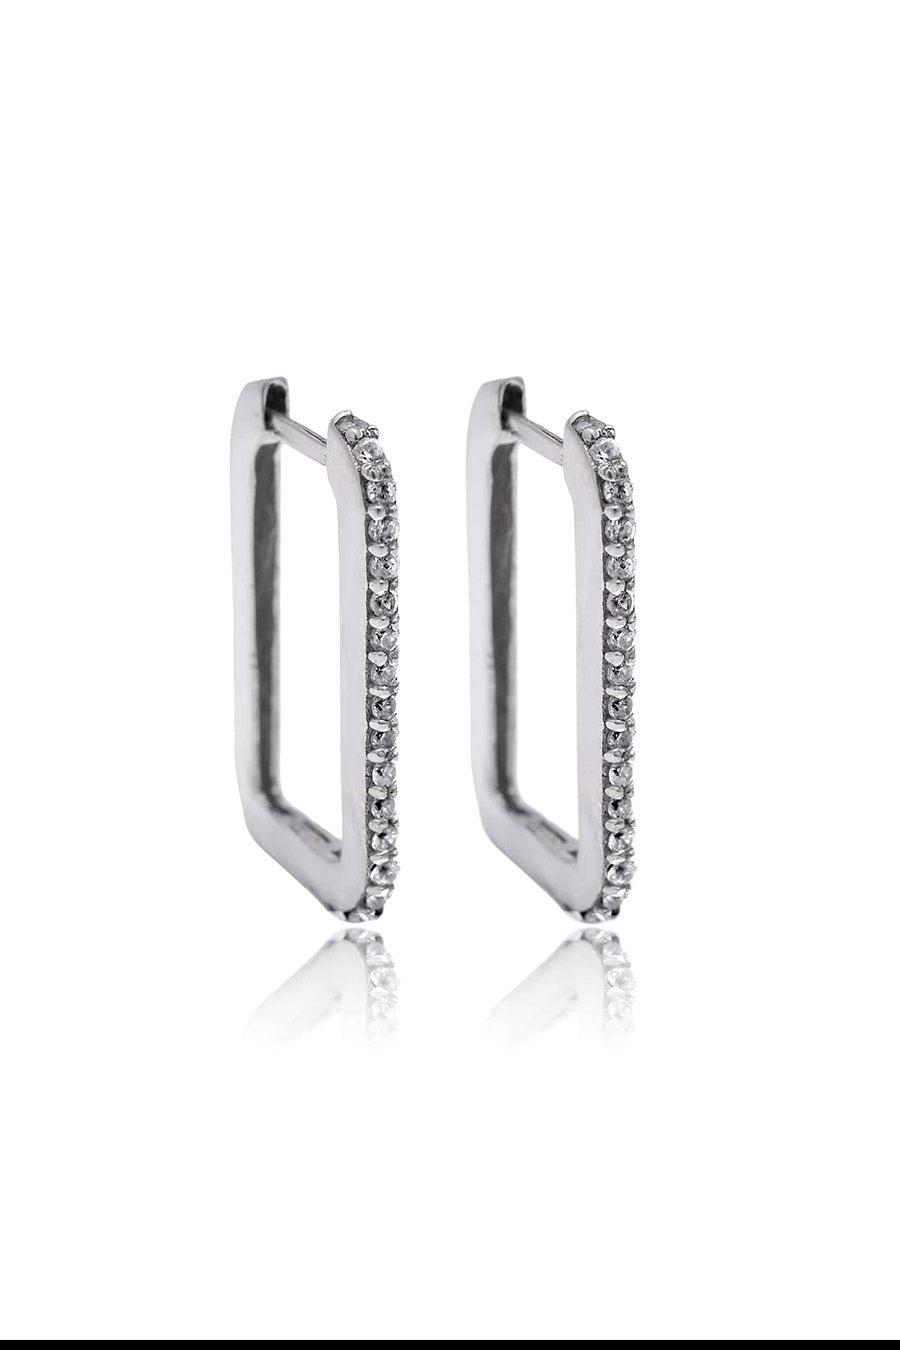 Studded Oblong Silver Earrings in 925 Silver